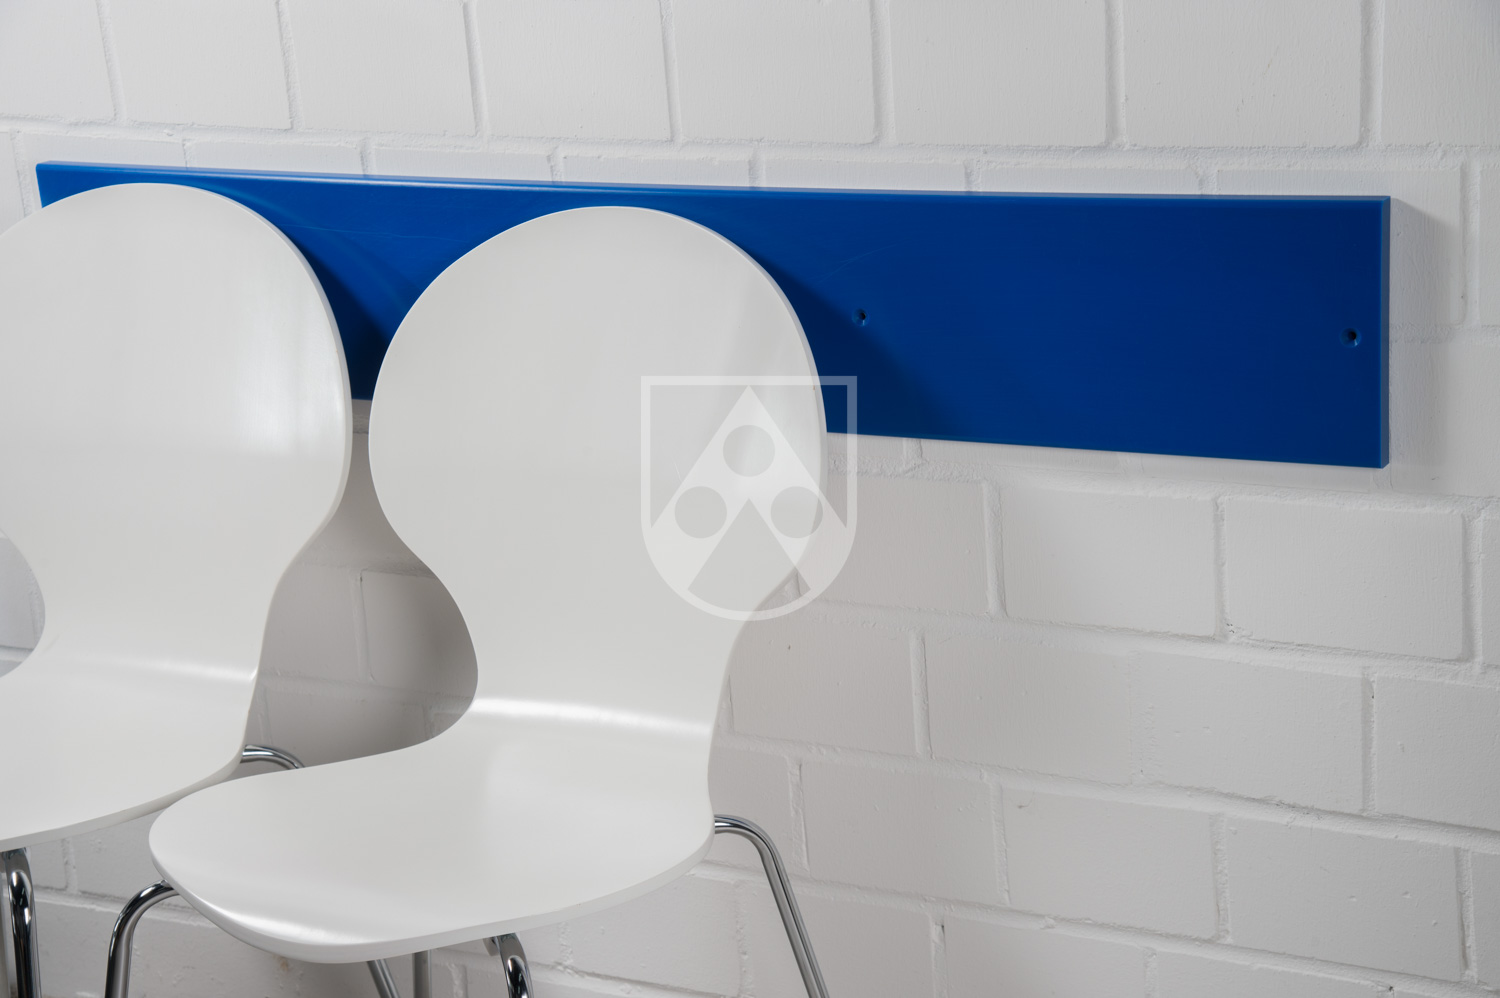 Защита стен Polystone® защищает стены в медицинских учреждениях от царапин, вызванных стульями